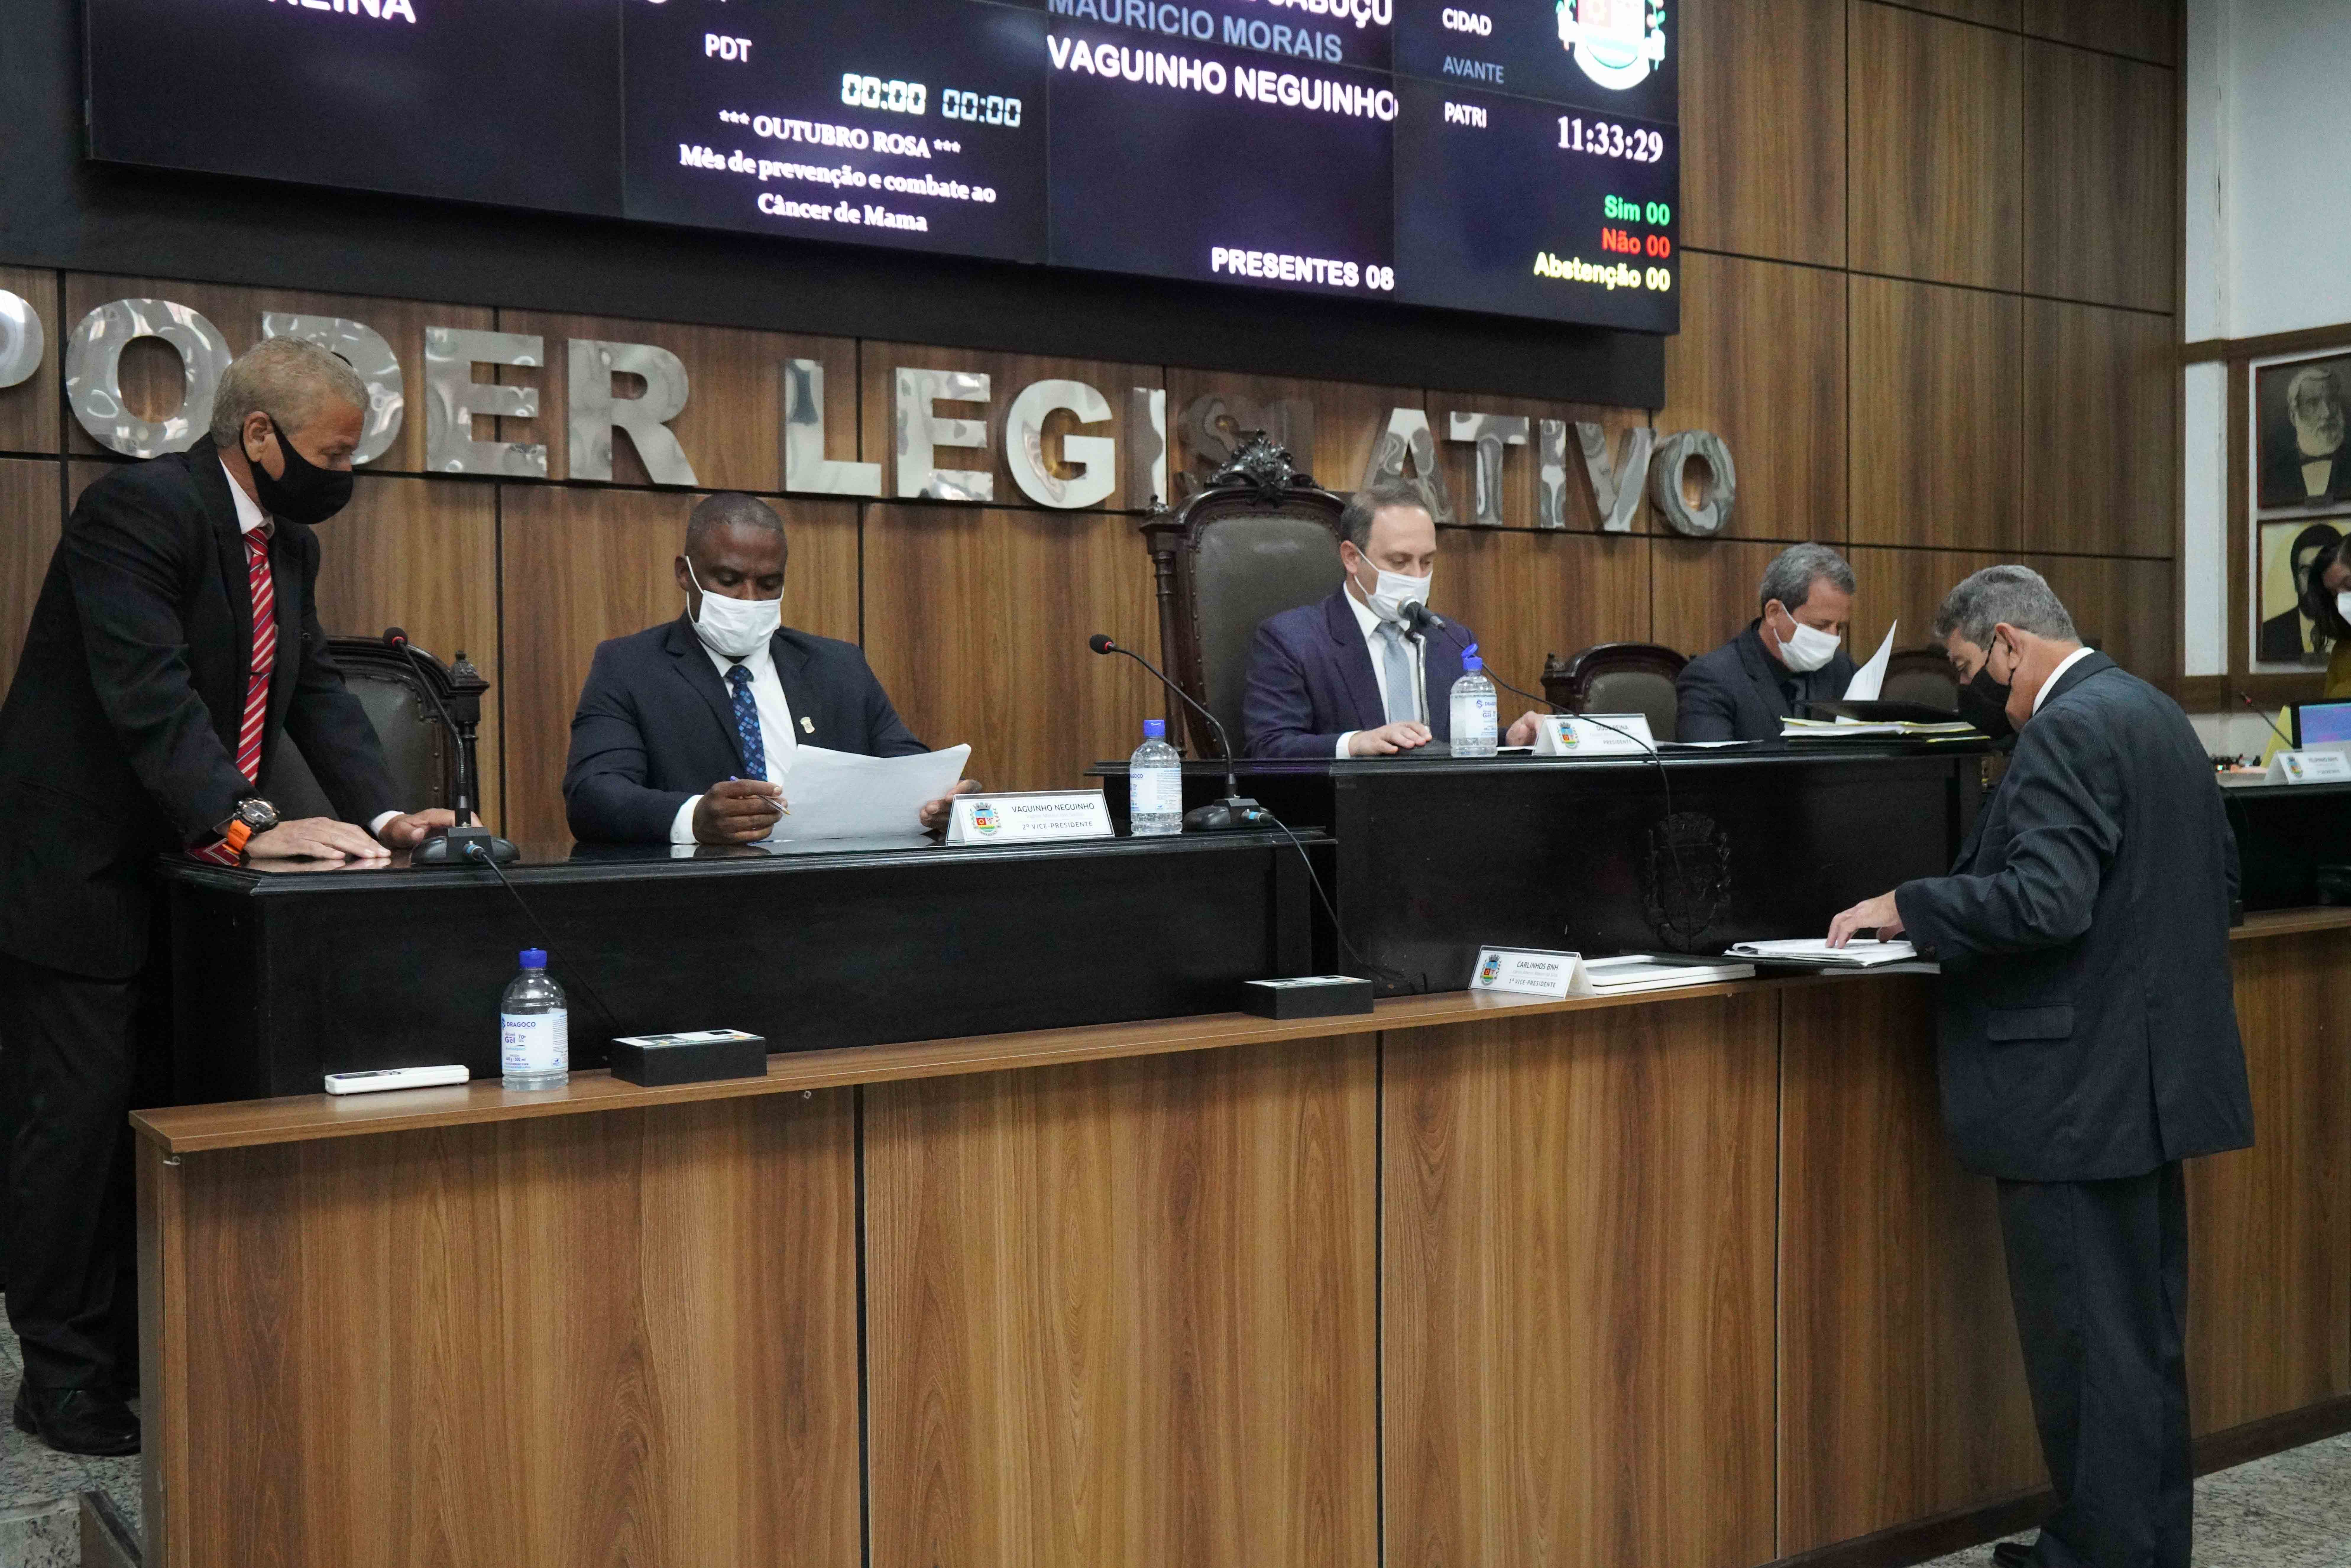 Câmara de Nova Iguaçu celebra acordo e acaba com litígios sobre aluguel da sede do Legislativo